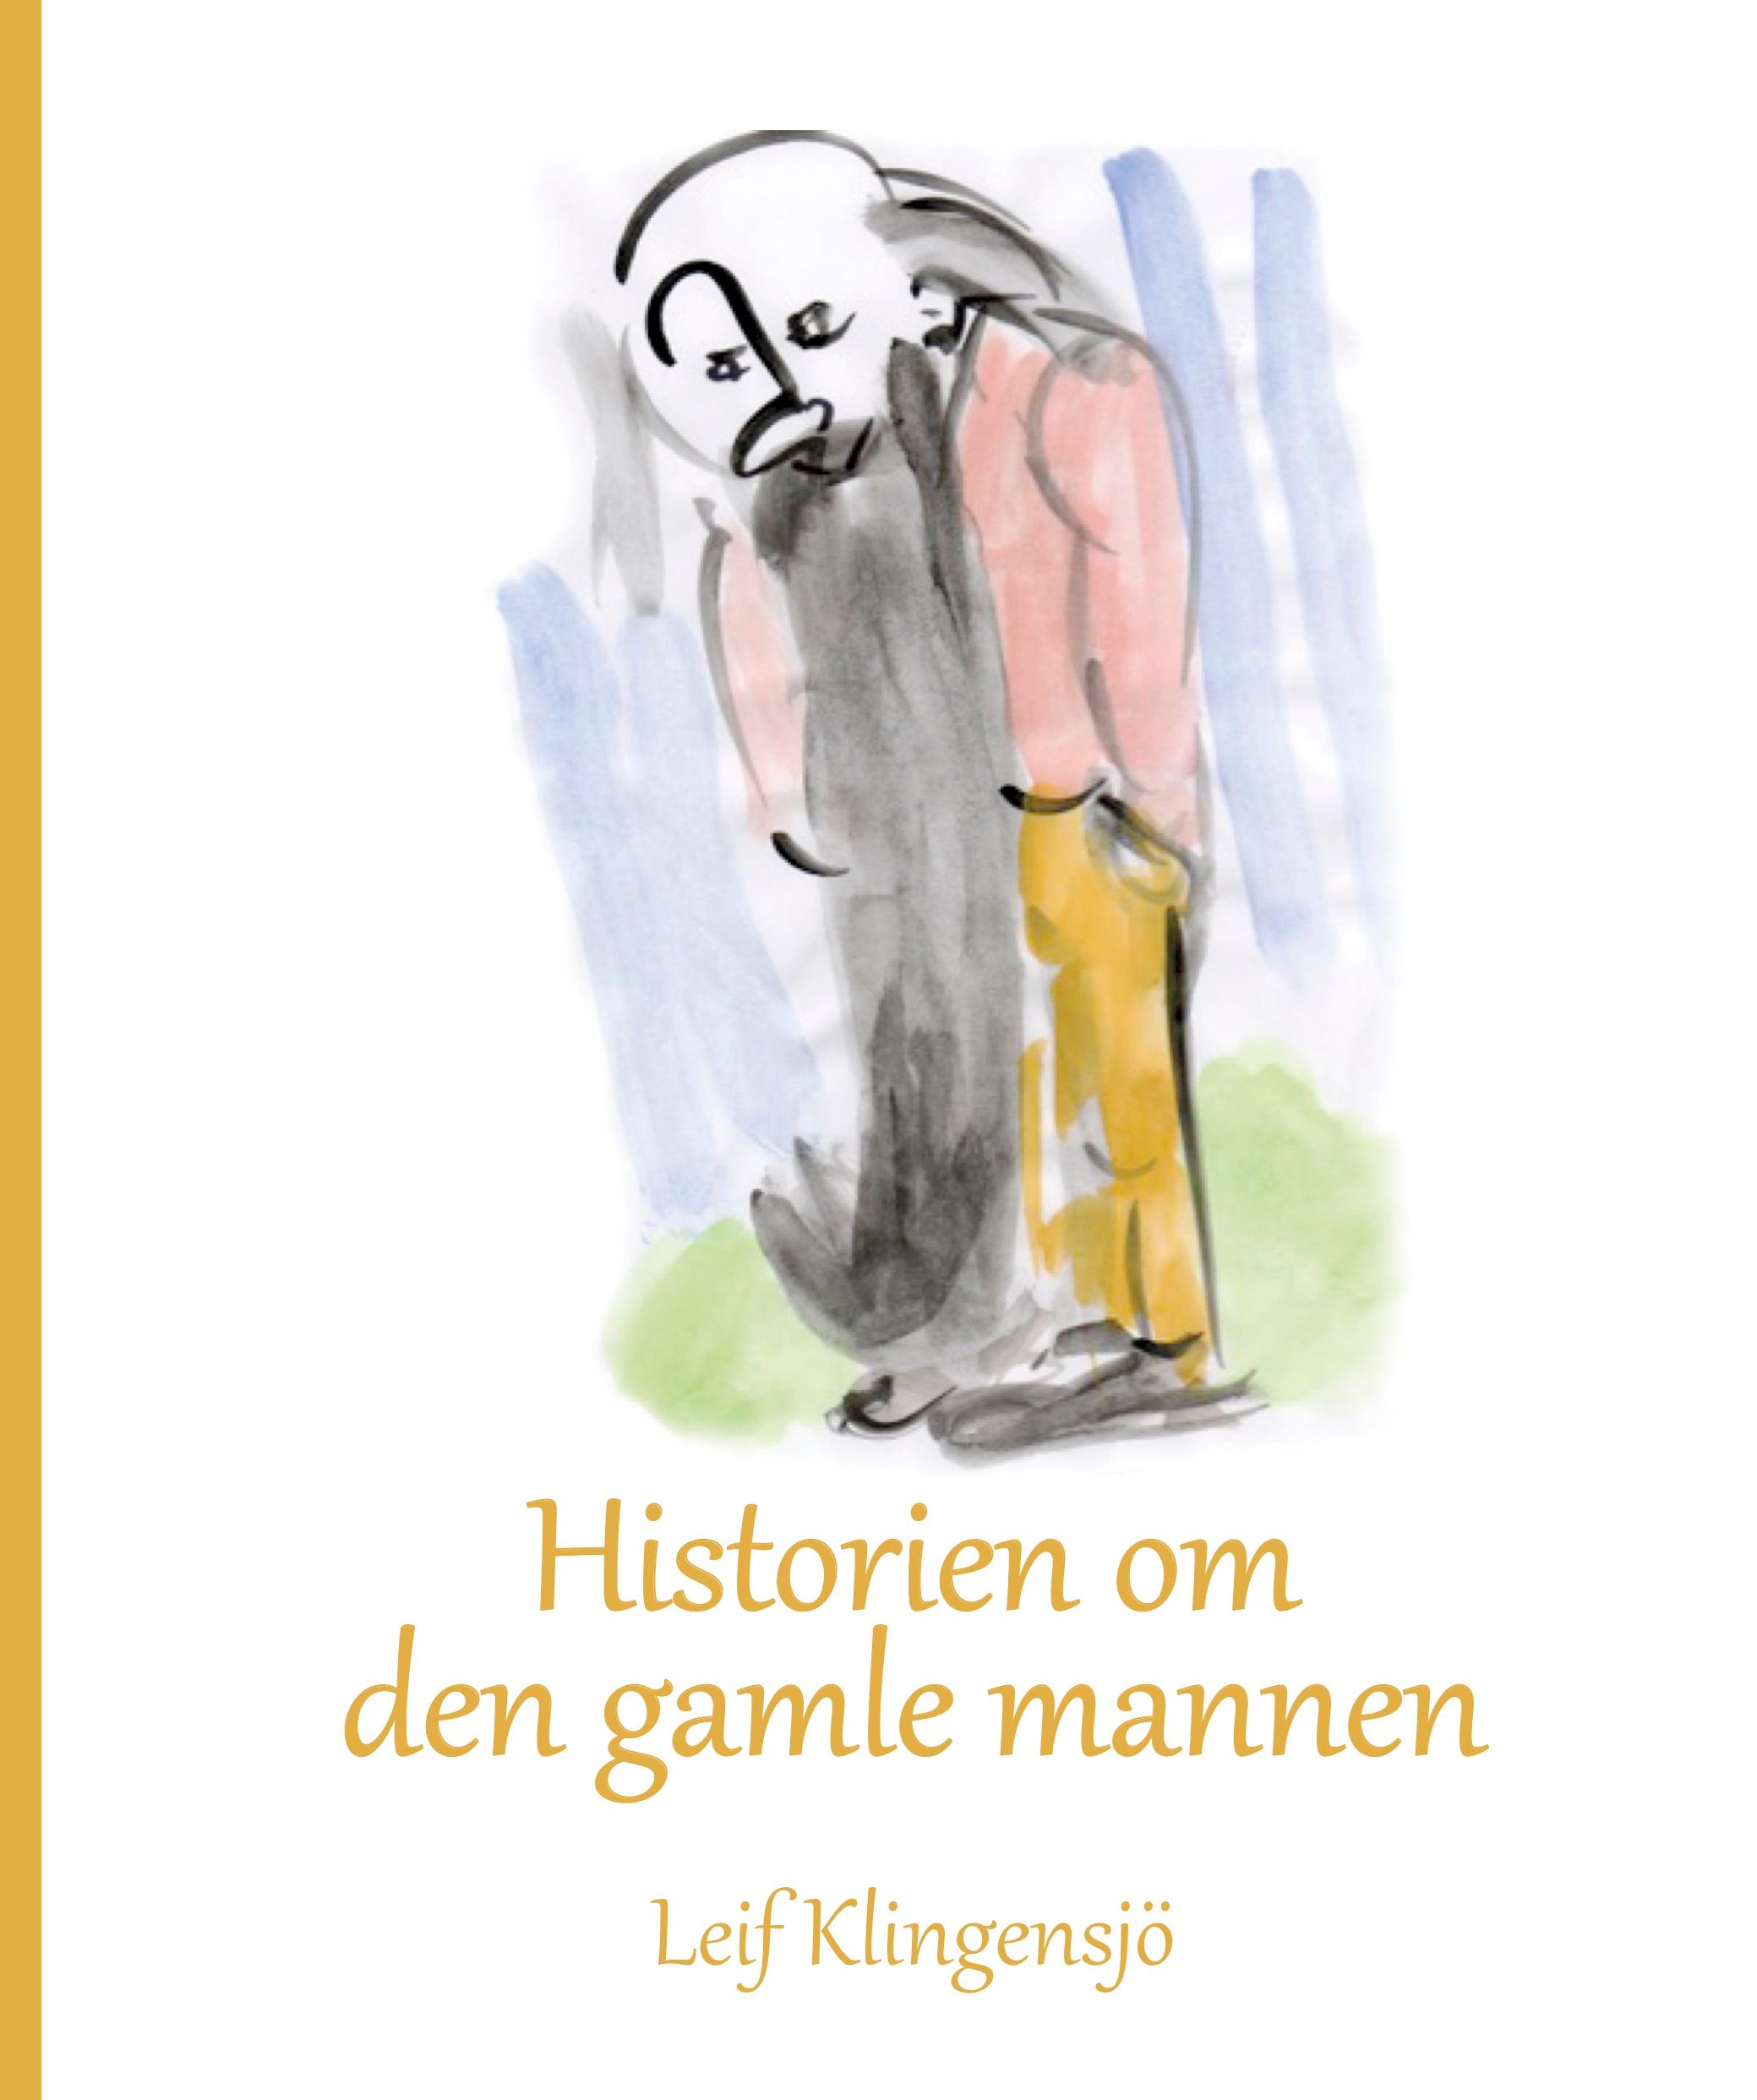 Historien om den gamle mannen, e-bok av Leif Klingensjö